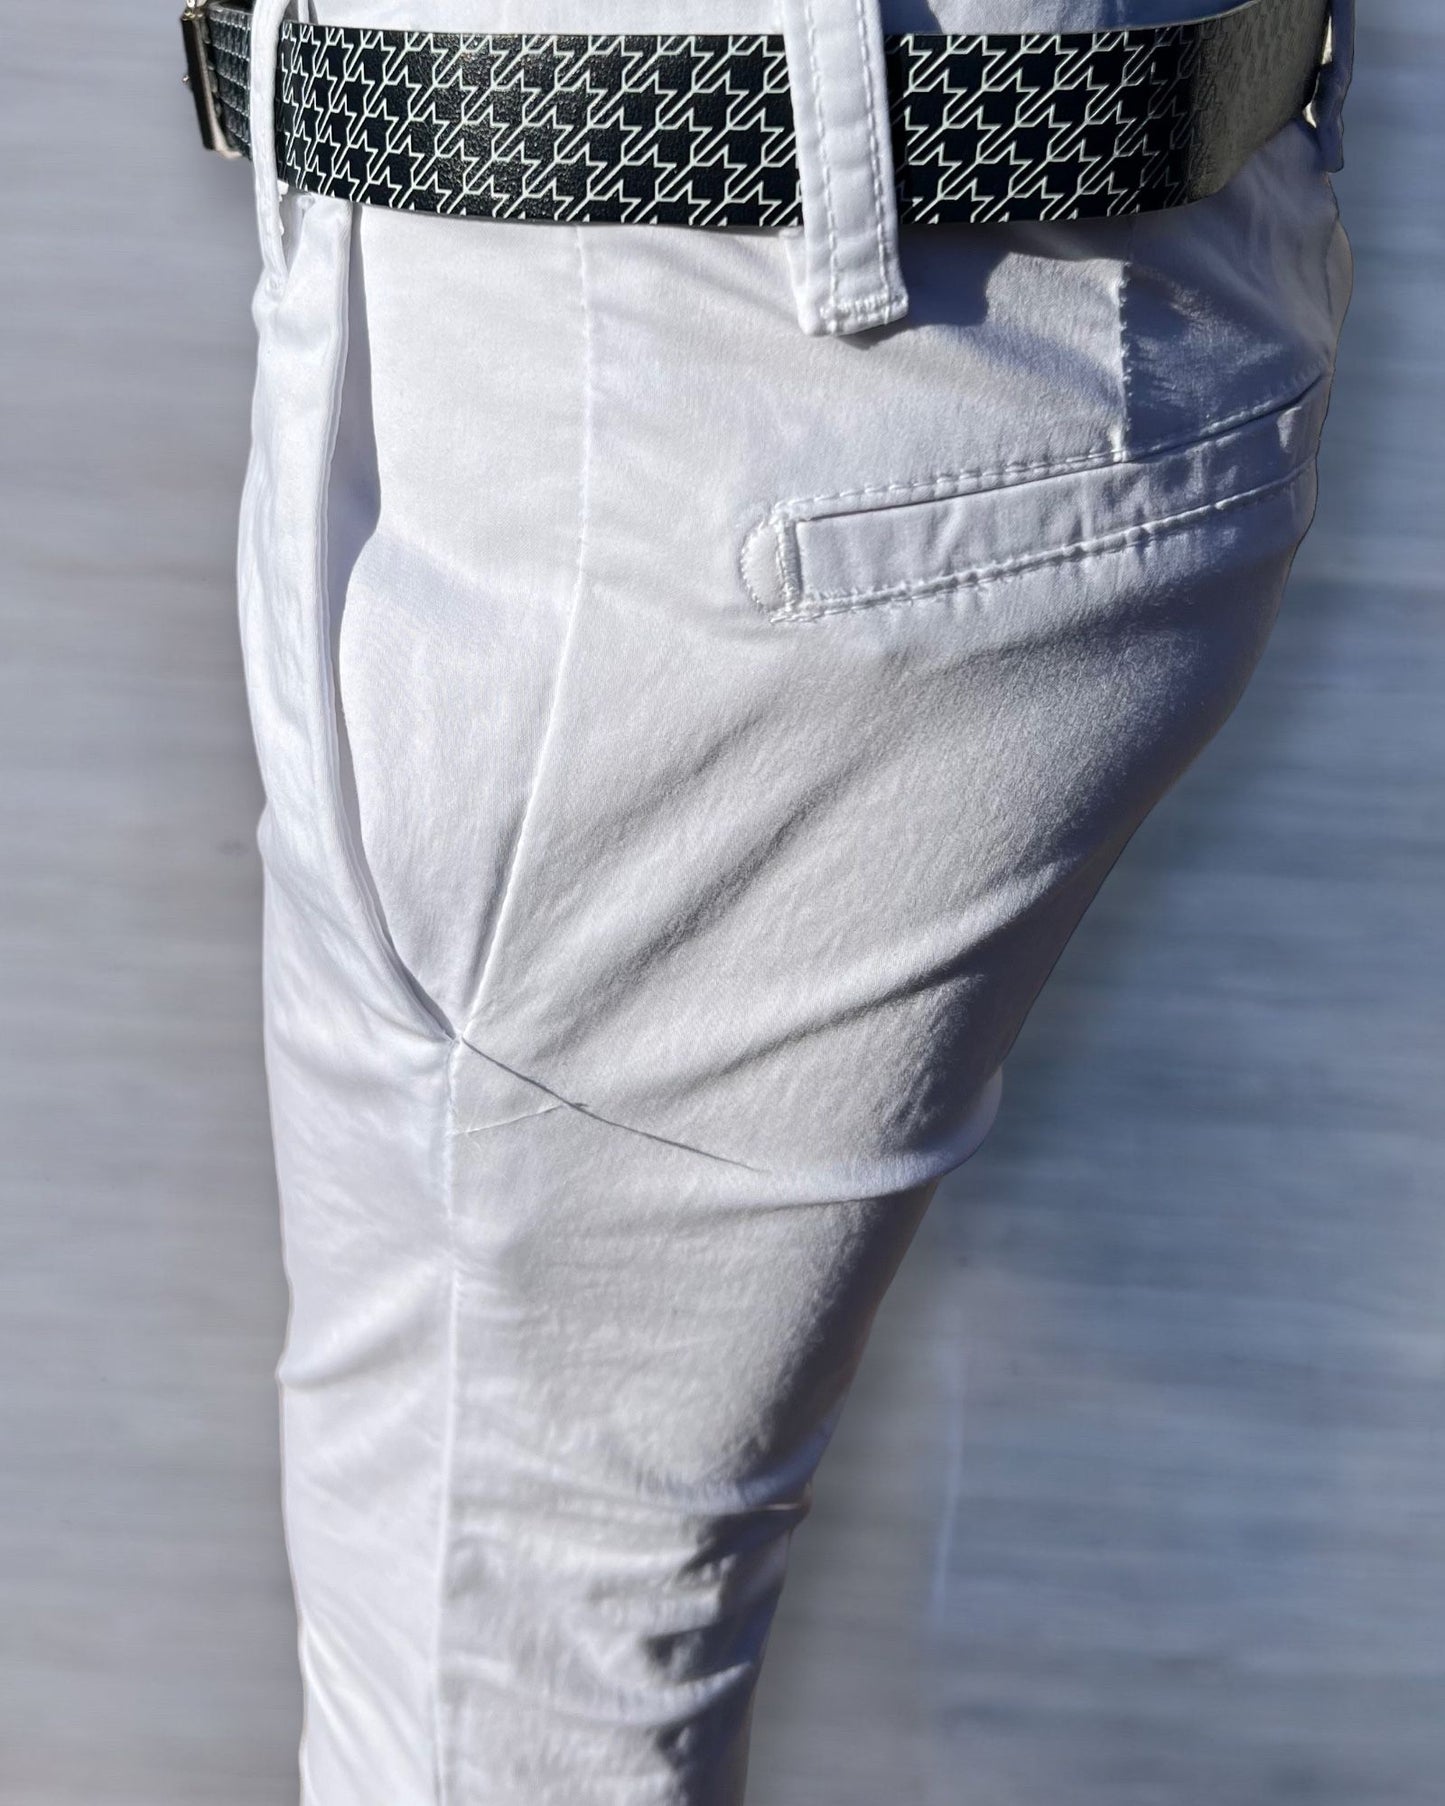 Pantalone In Cotone Neonato - Mstore016